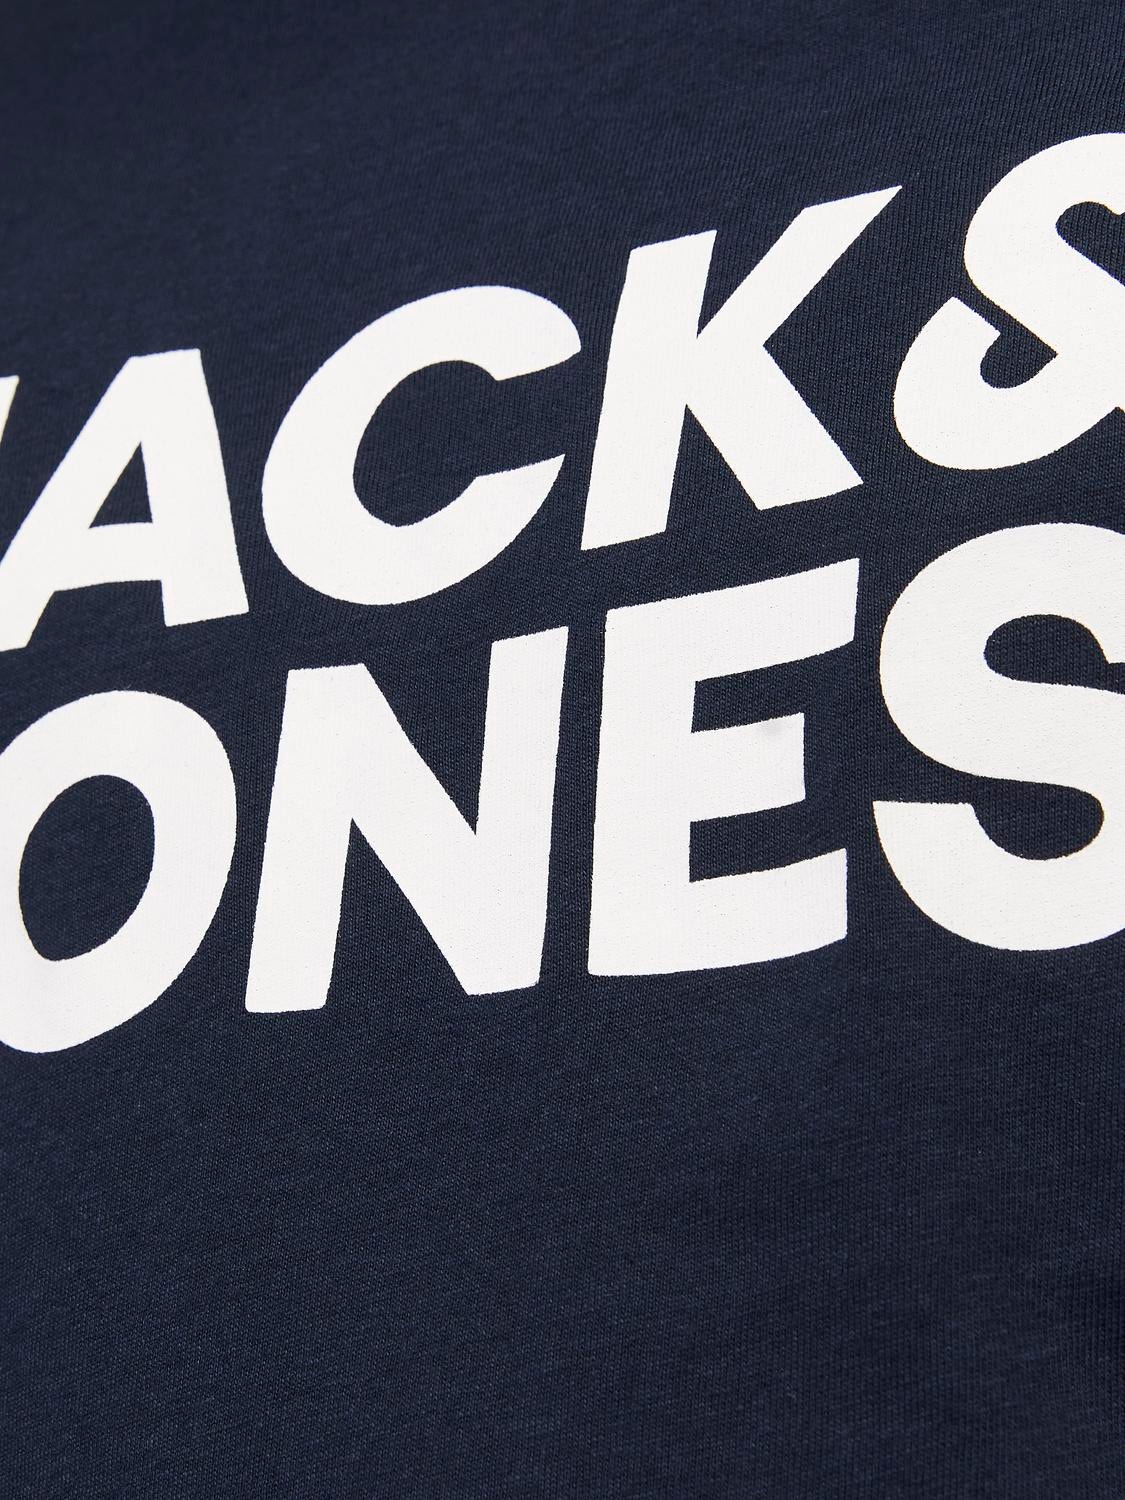 Jack & Jones Logo T-särk Junior -Navy Blazer - 12152730